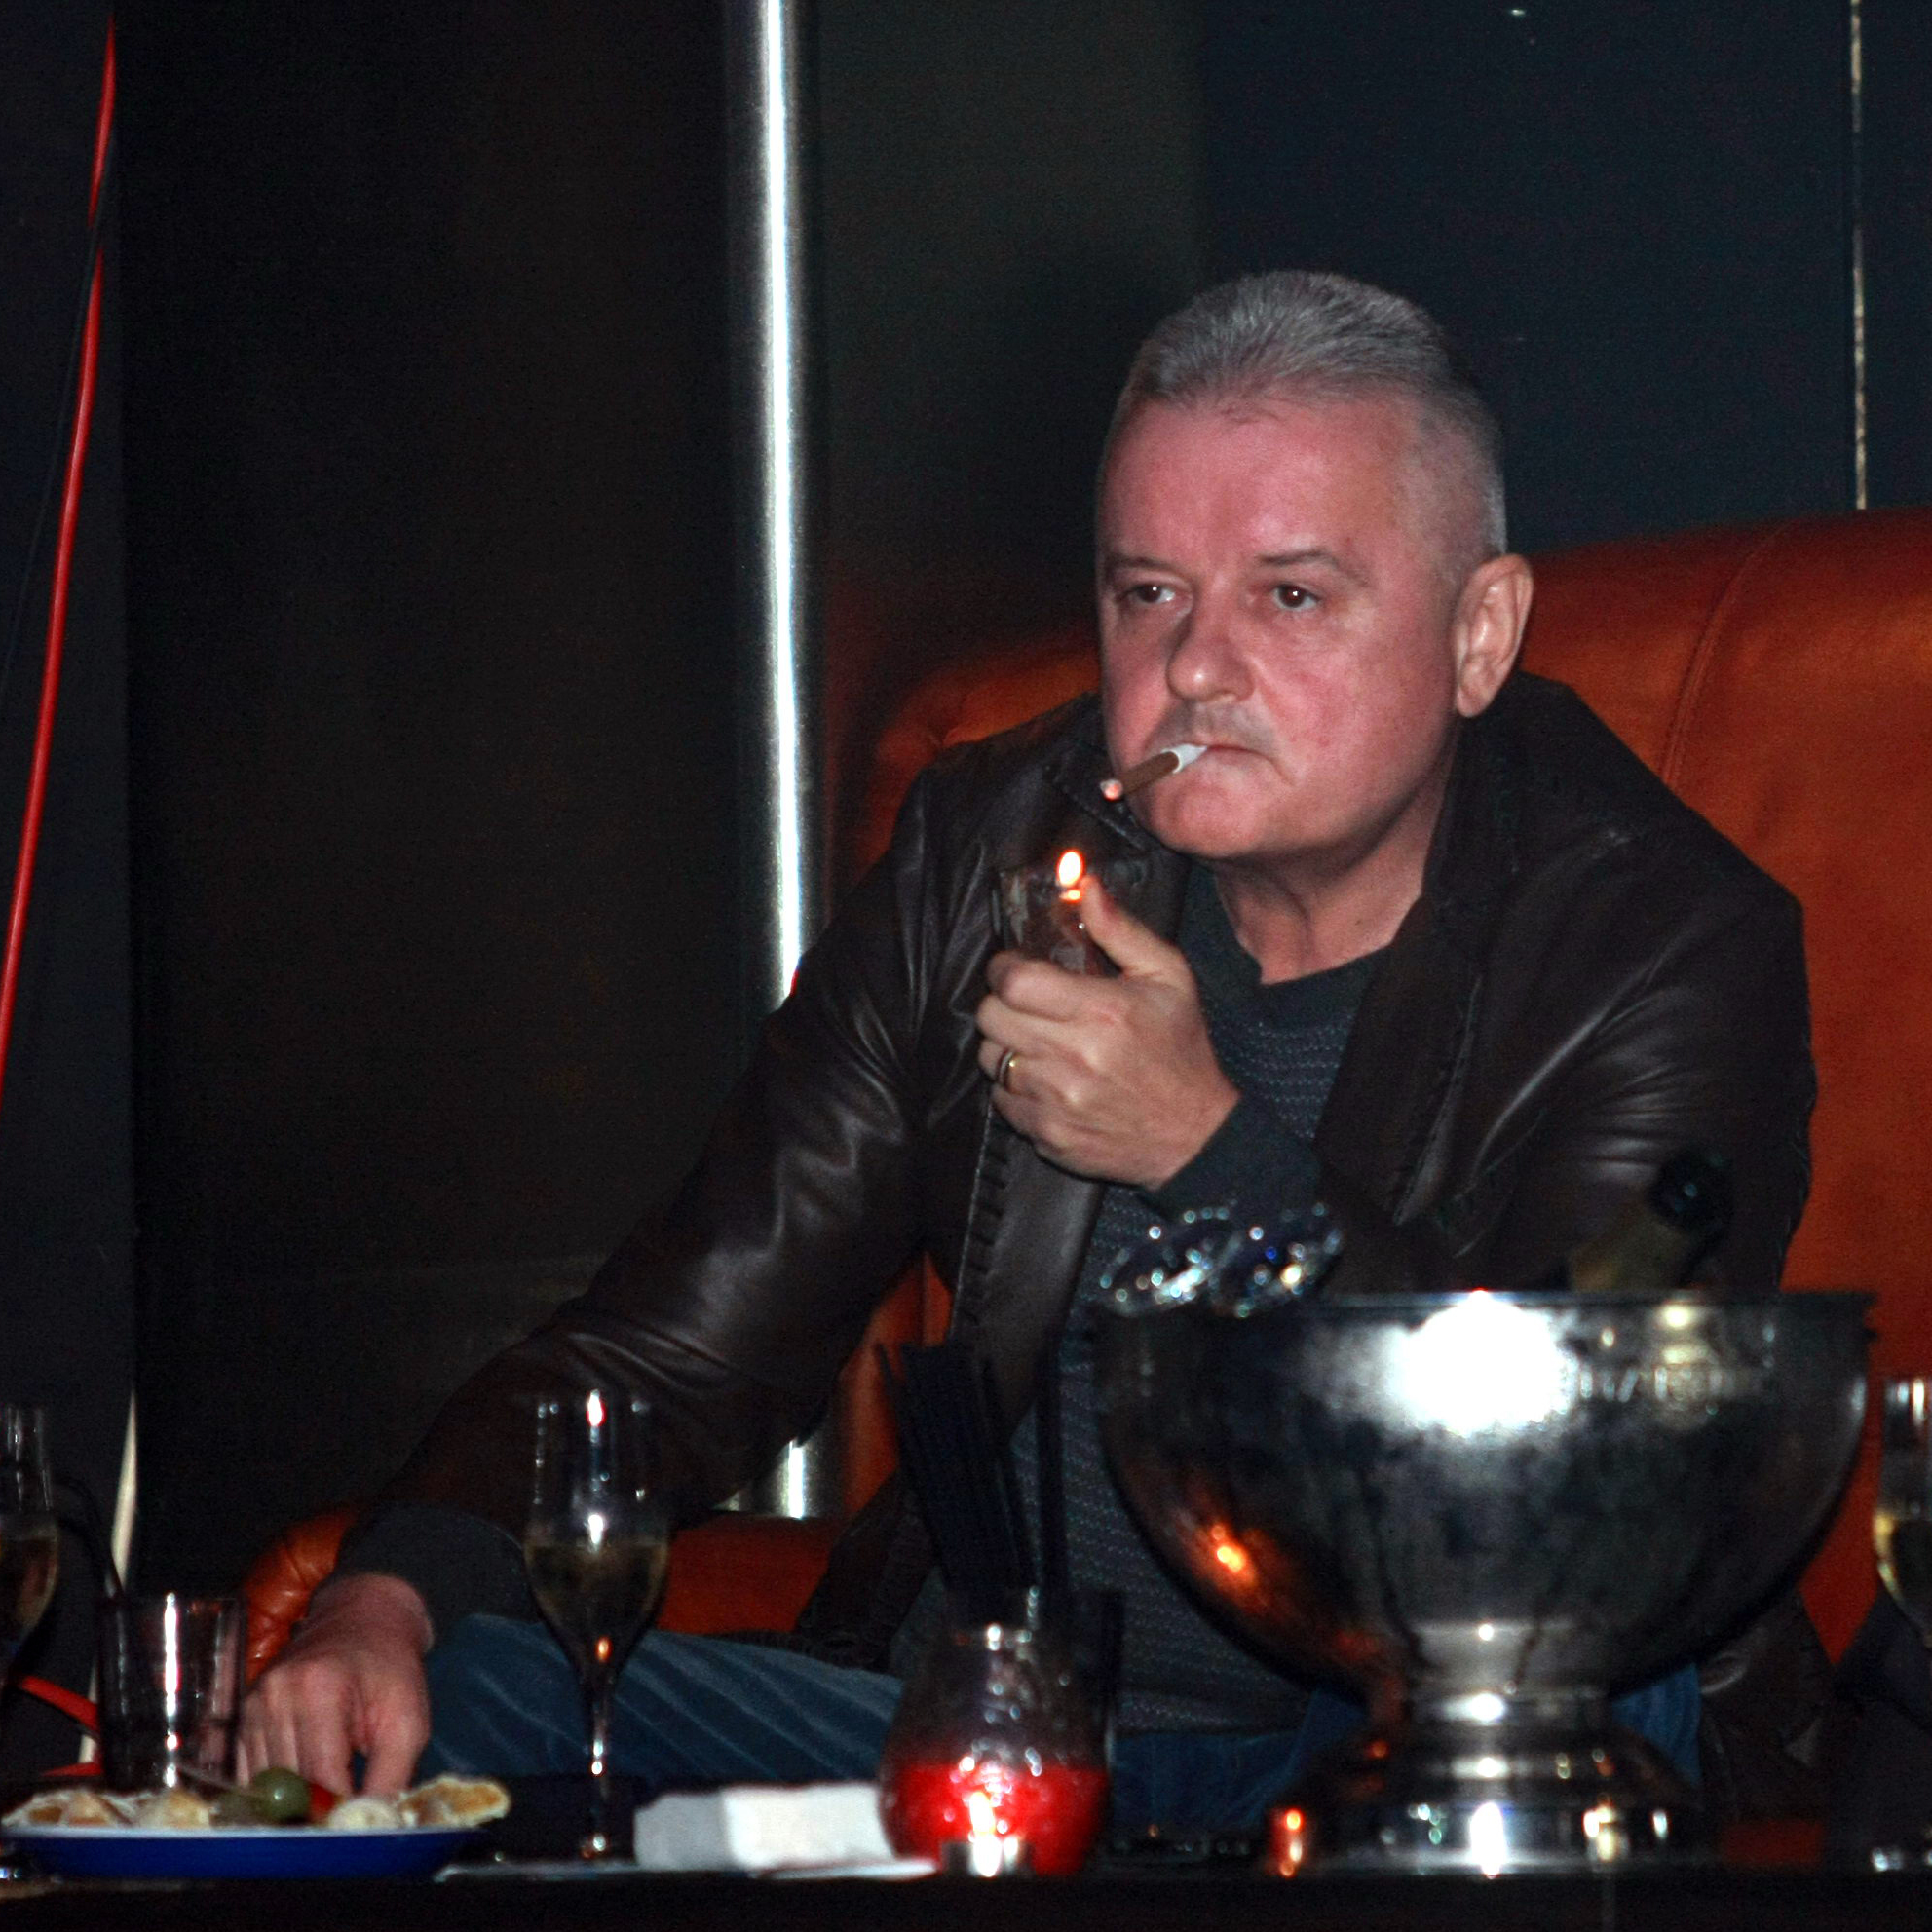 De Anul Nou, Irinel Columbeanu a mers singur intr-un local de fite din Brasov, unde a stat retras la bar